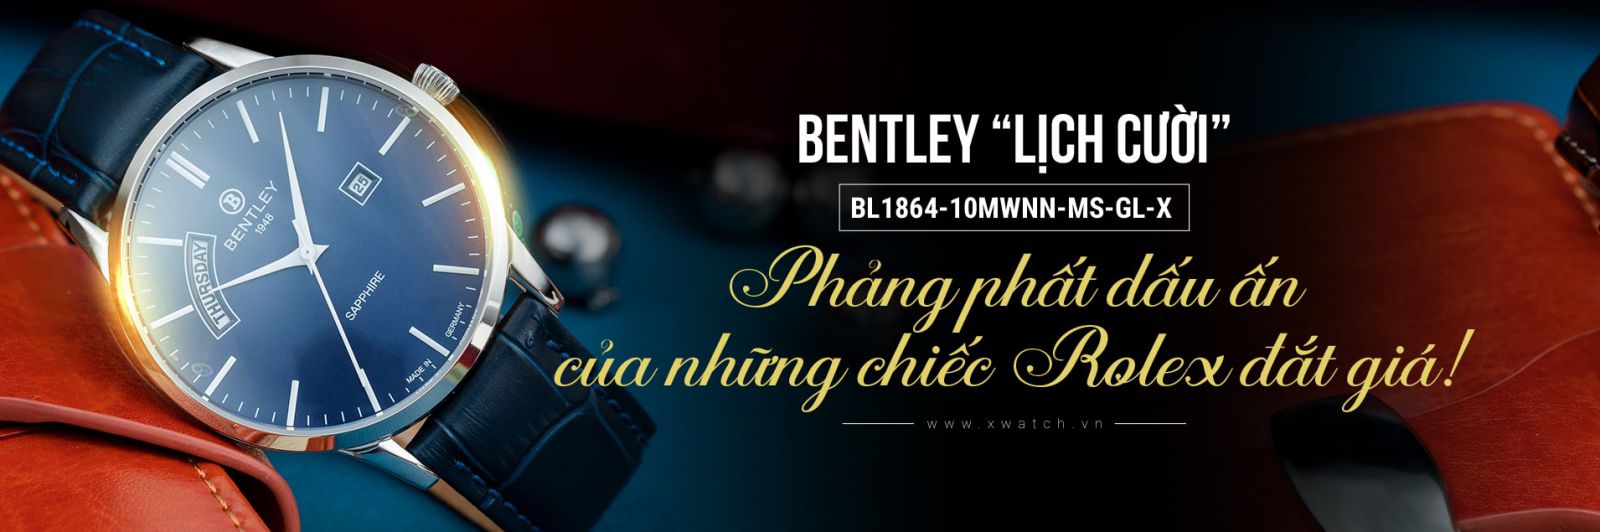 Đồng hồ Bentley BL1864-10MWNN-MS-GL-X